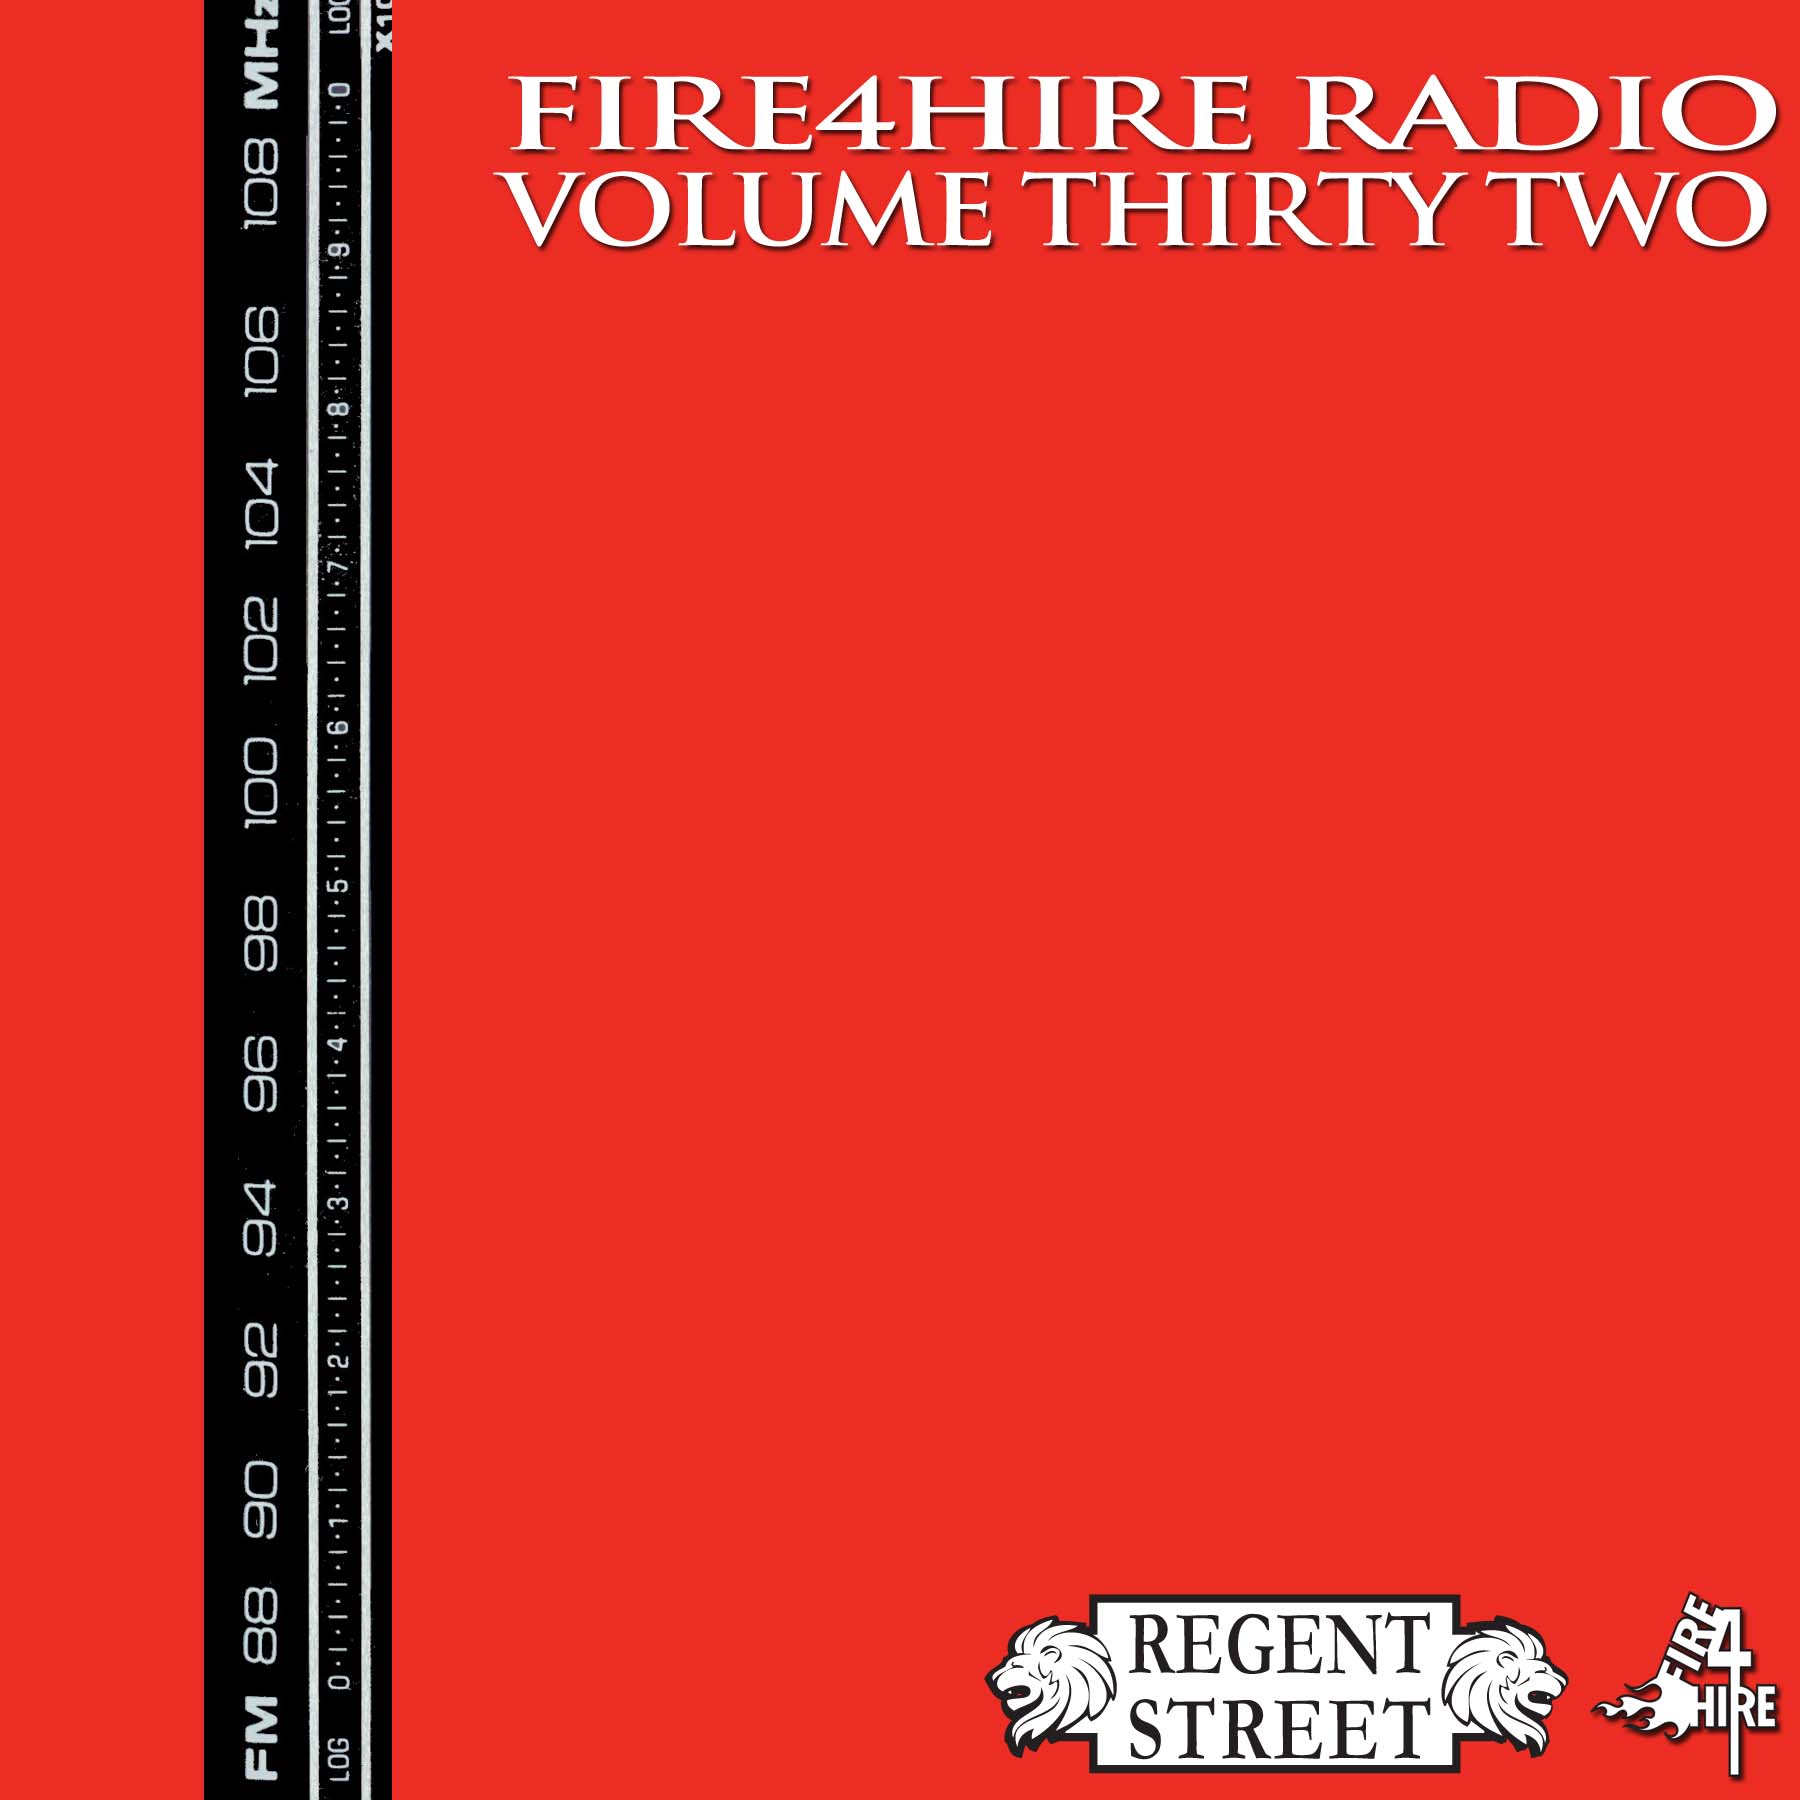 Regent Street Fire 4 Hire Radio Vol. 32